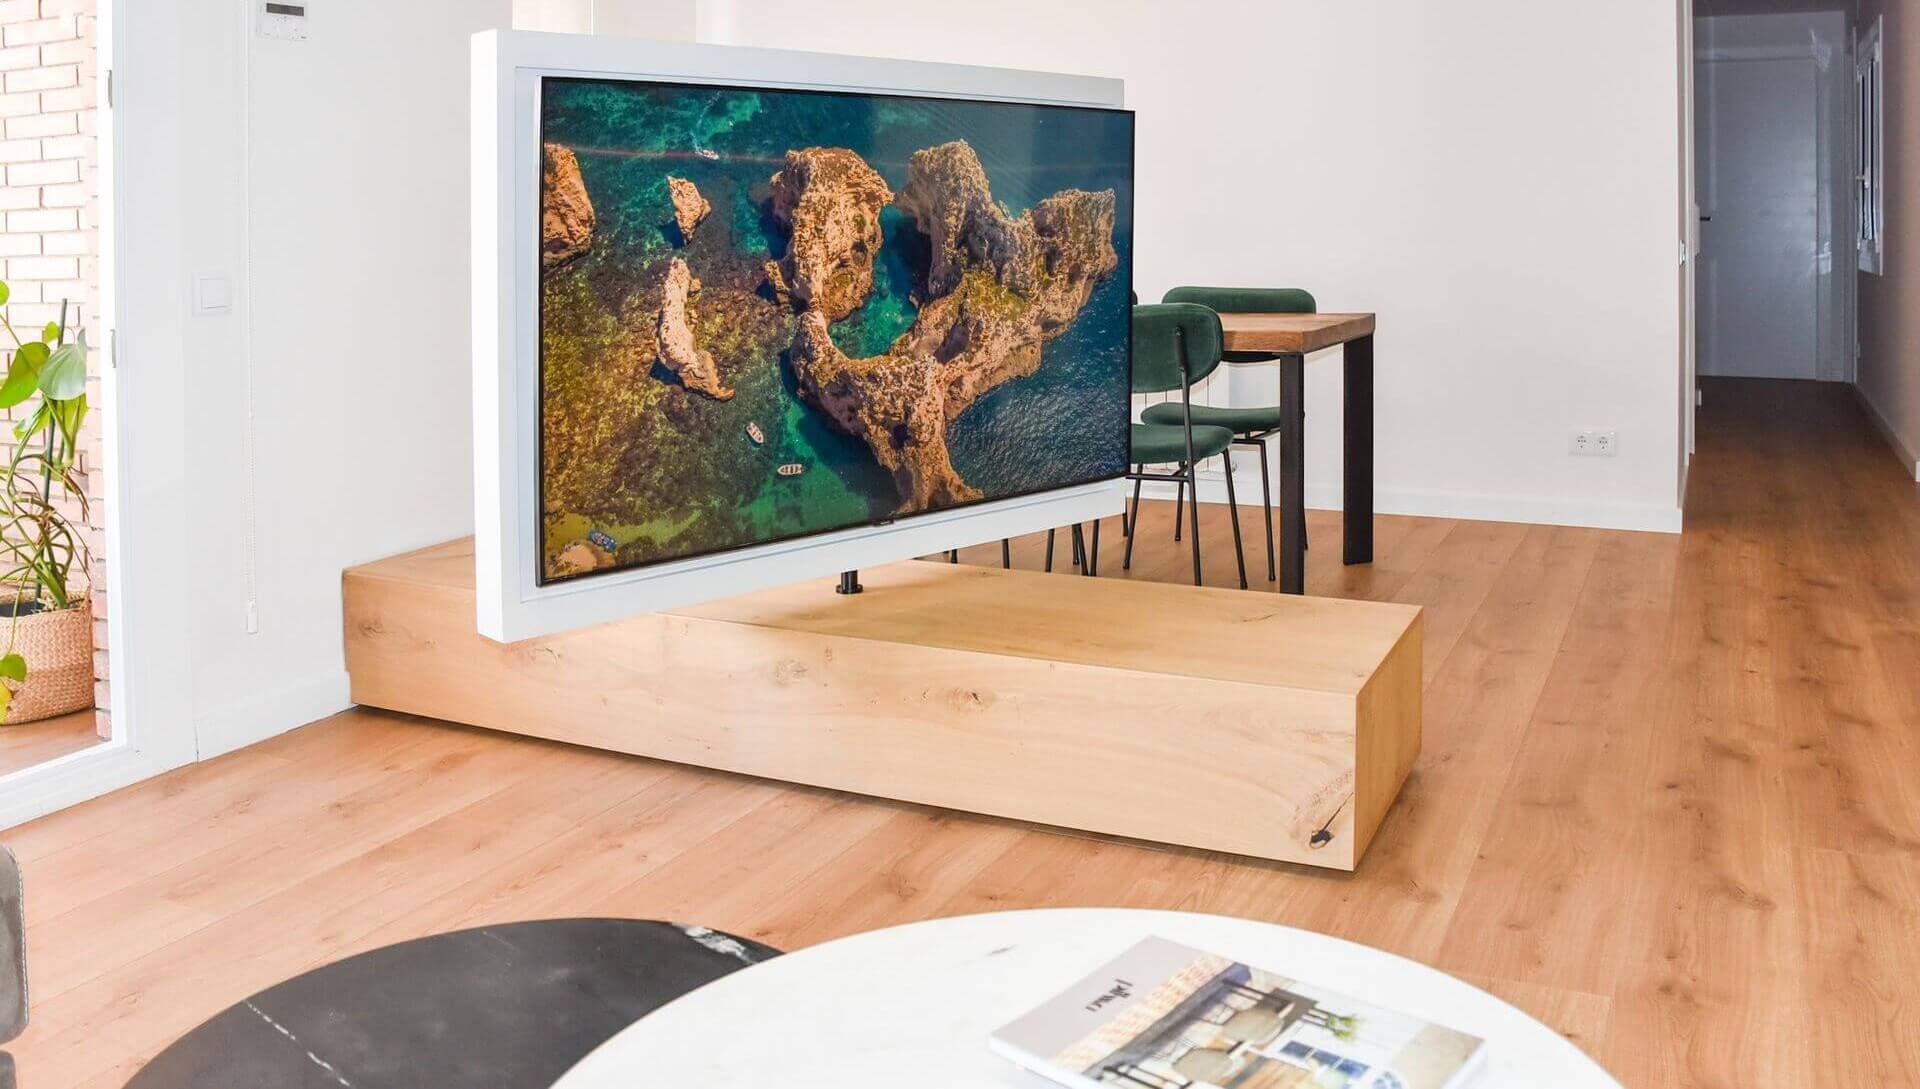 Mueble bajo con tv giratoria. (Barcelona) 2.930€ Aprox